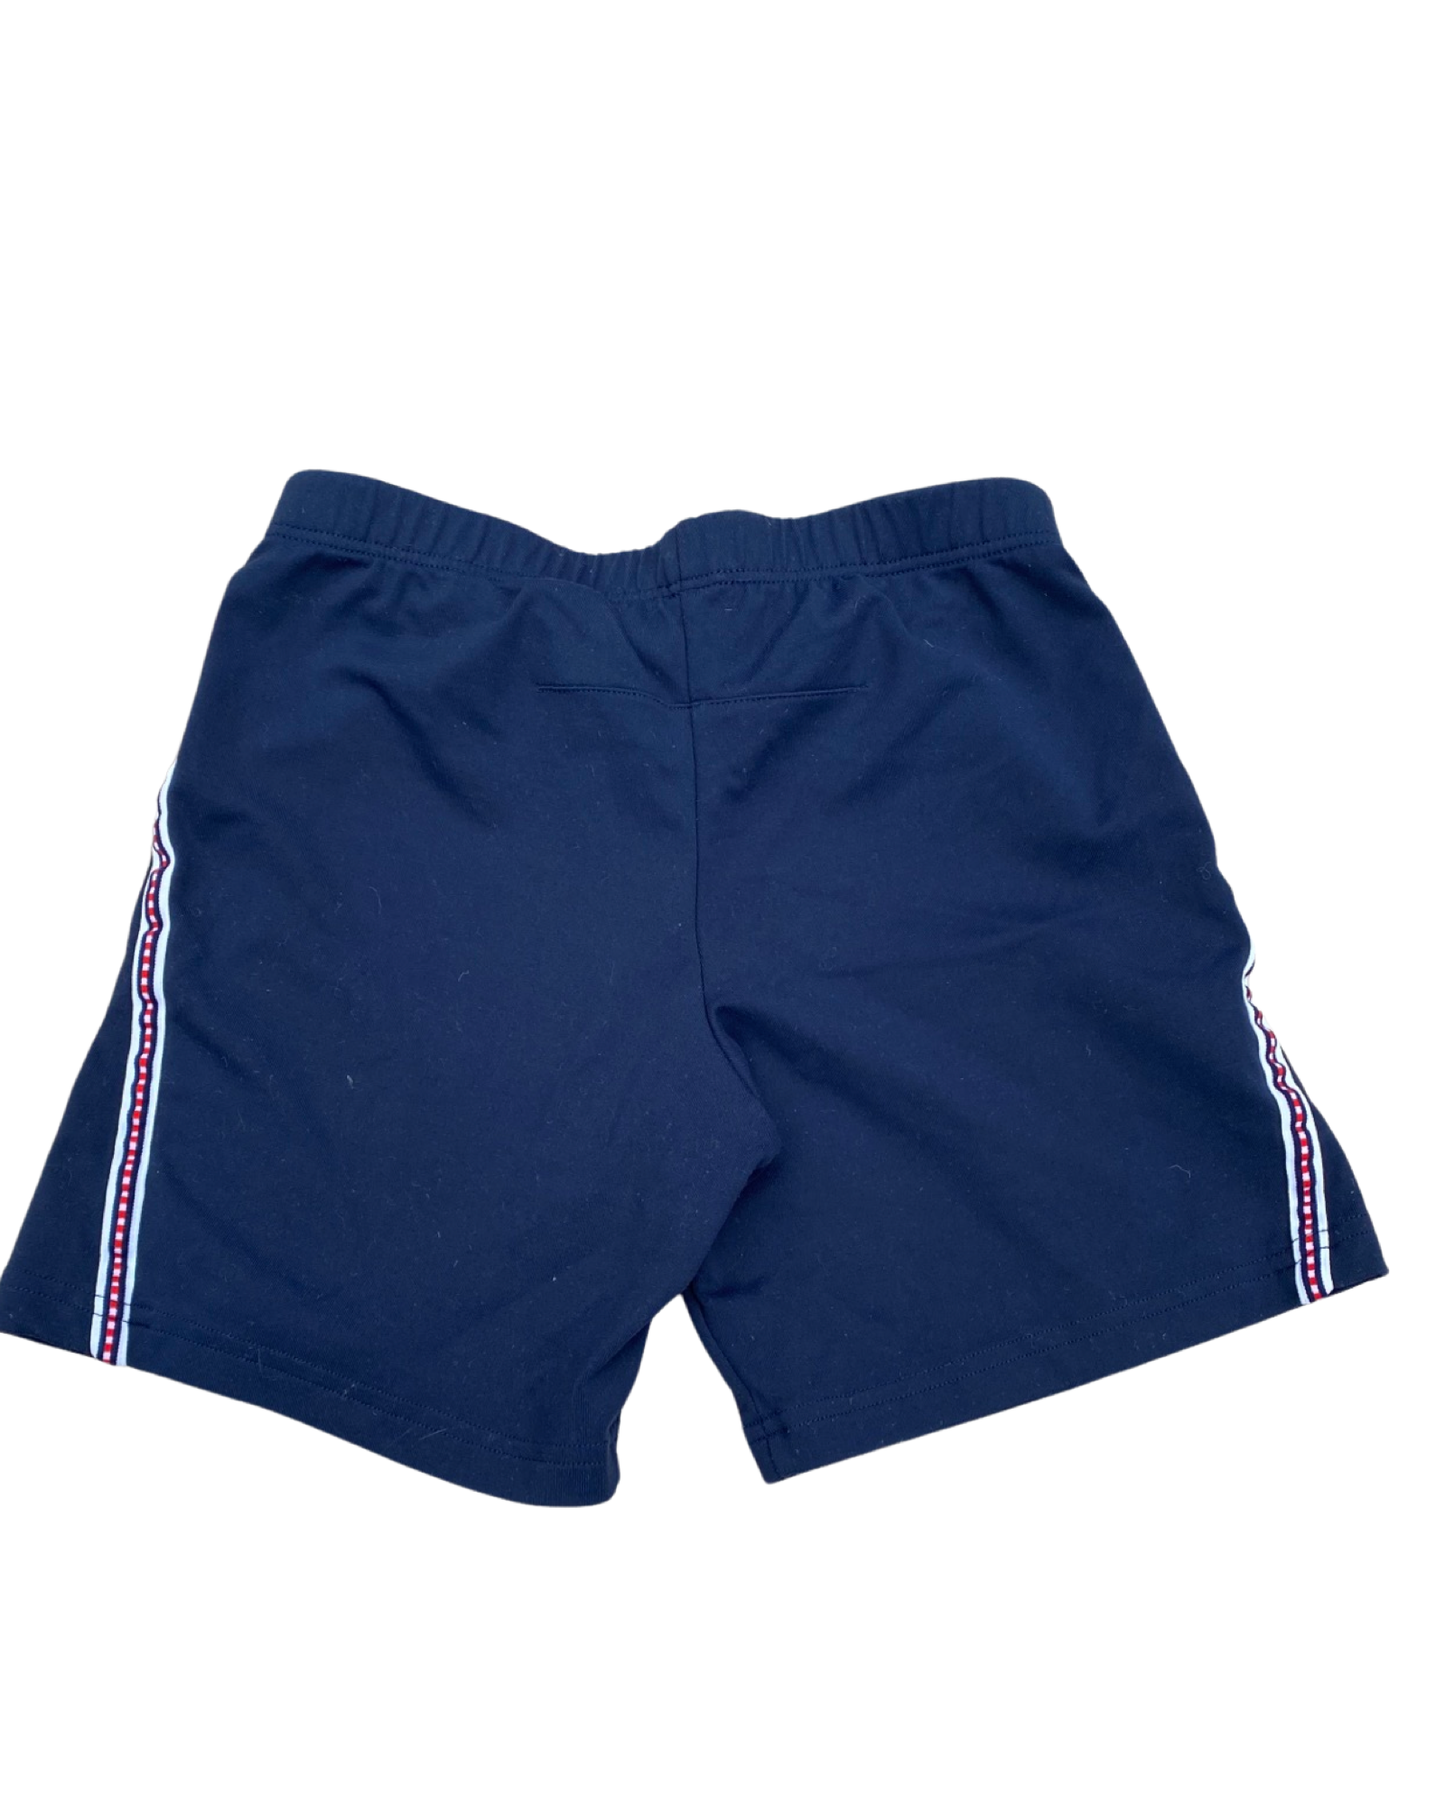 Tommy Hilfiger navy light jersey shorts (size 6-7yrs)